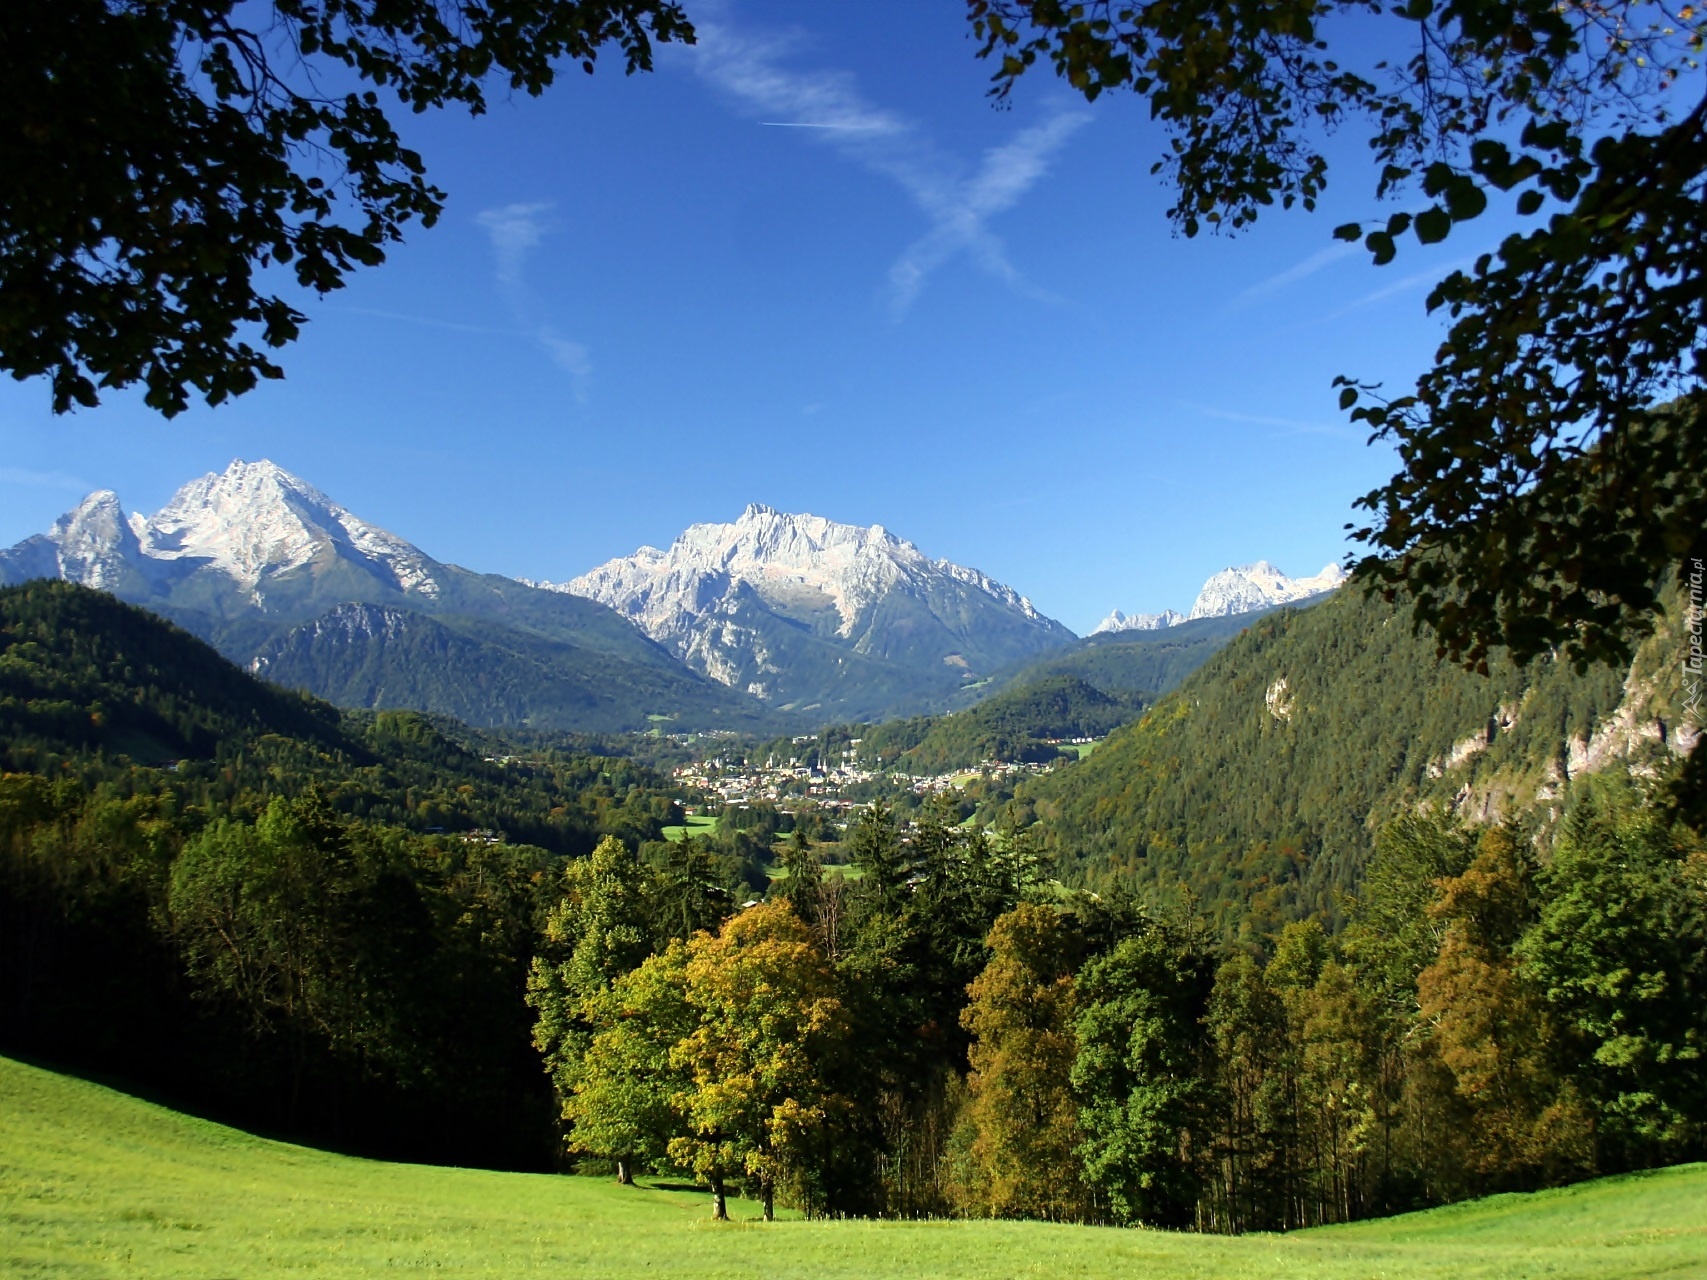 Niemcy, Park Narodowy Berchtesgaden, Góry Watzmann, Las, Łąka